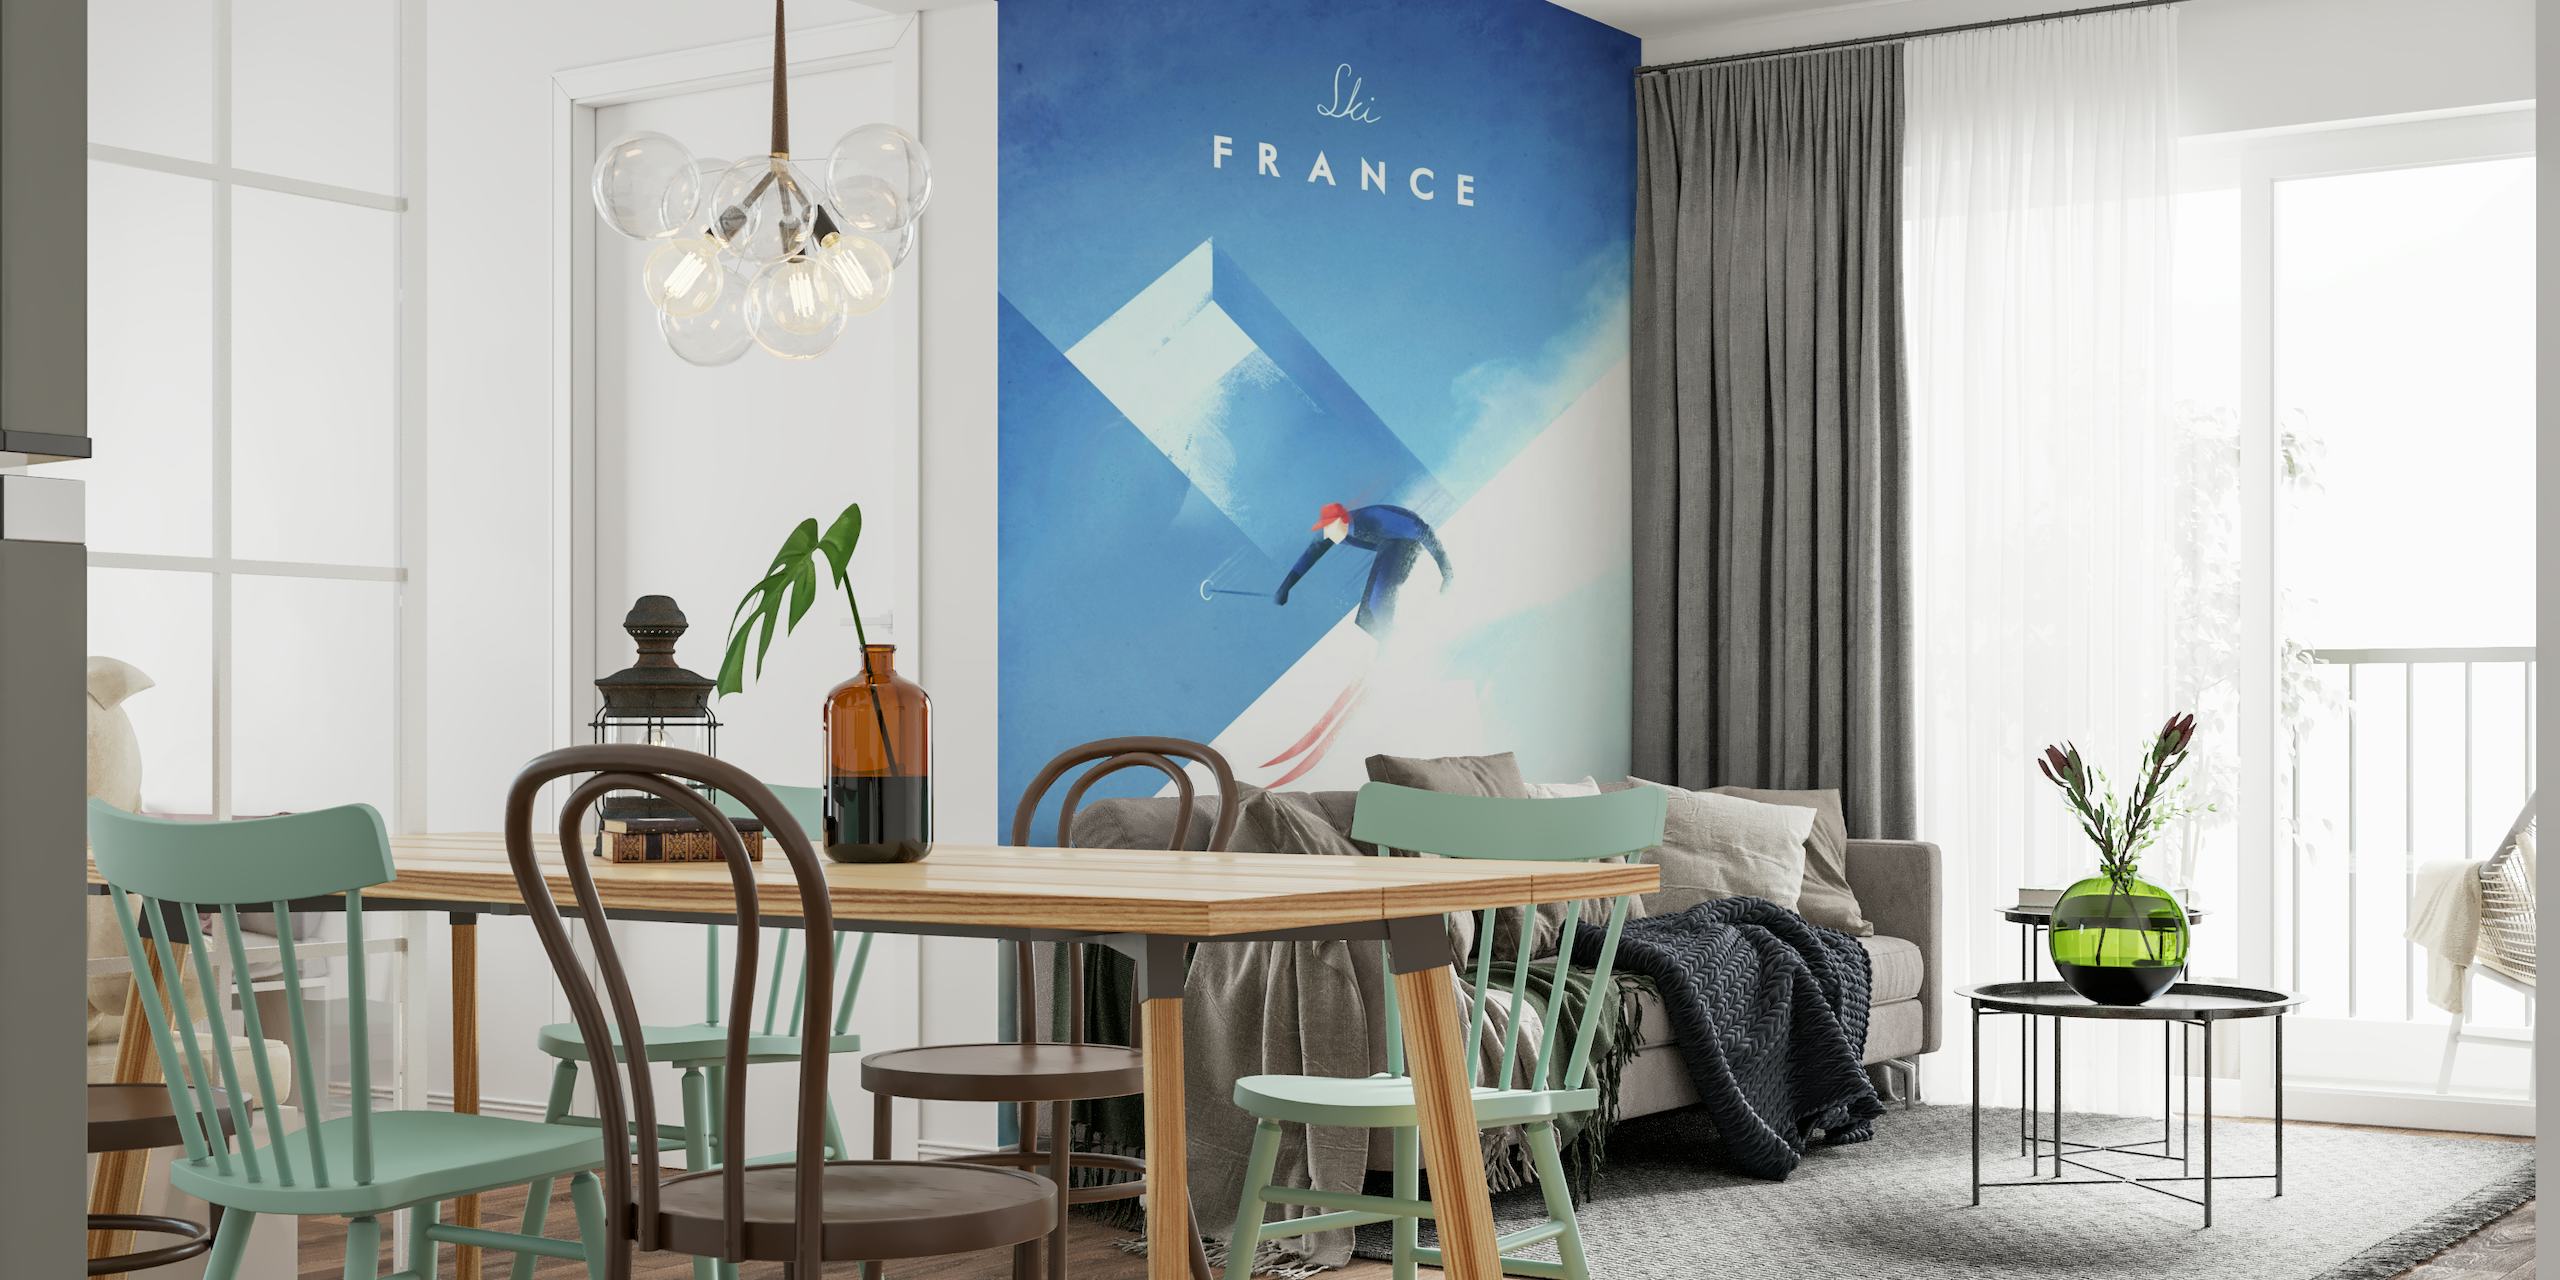 Ski France Travel Poster wallpaper